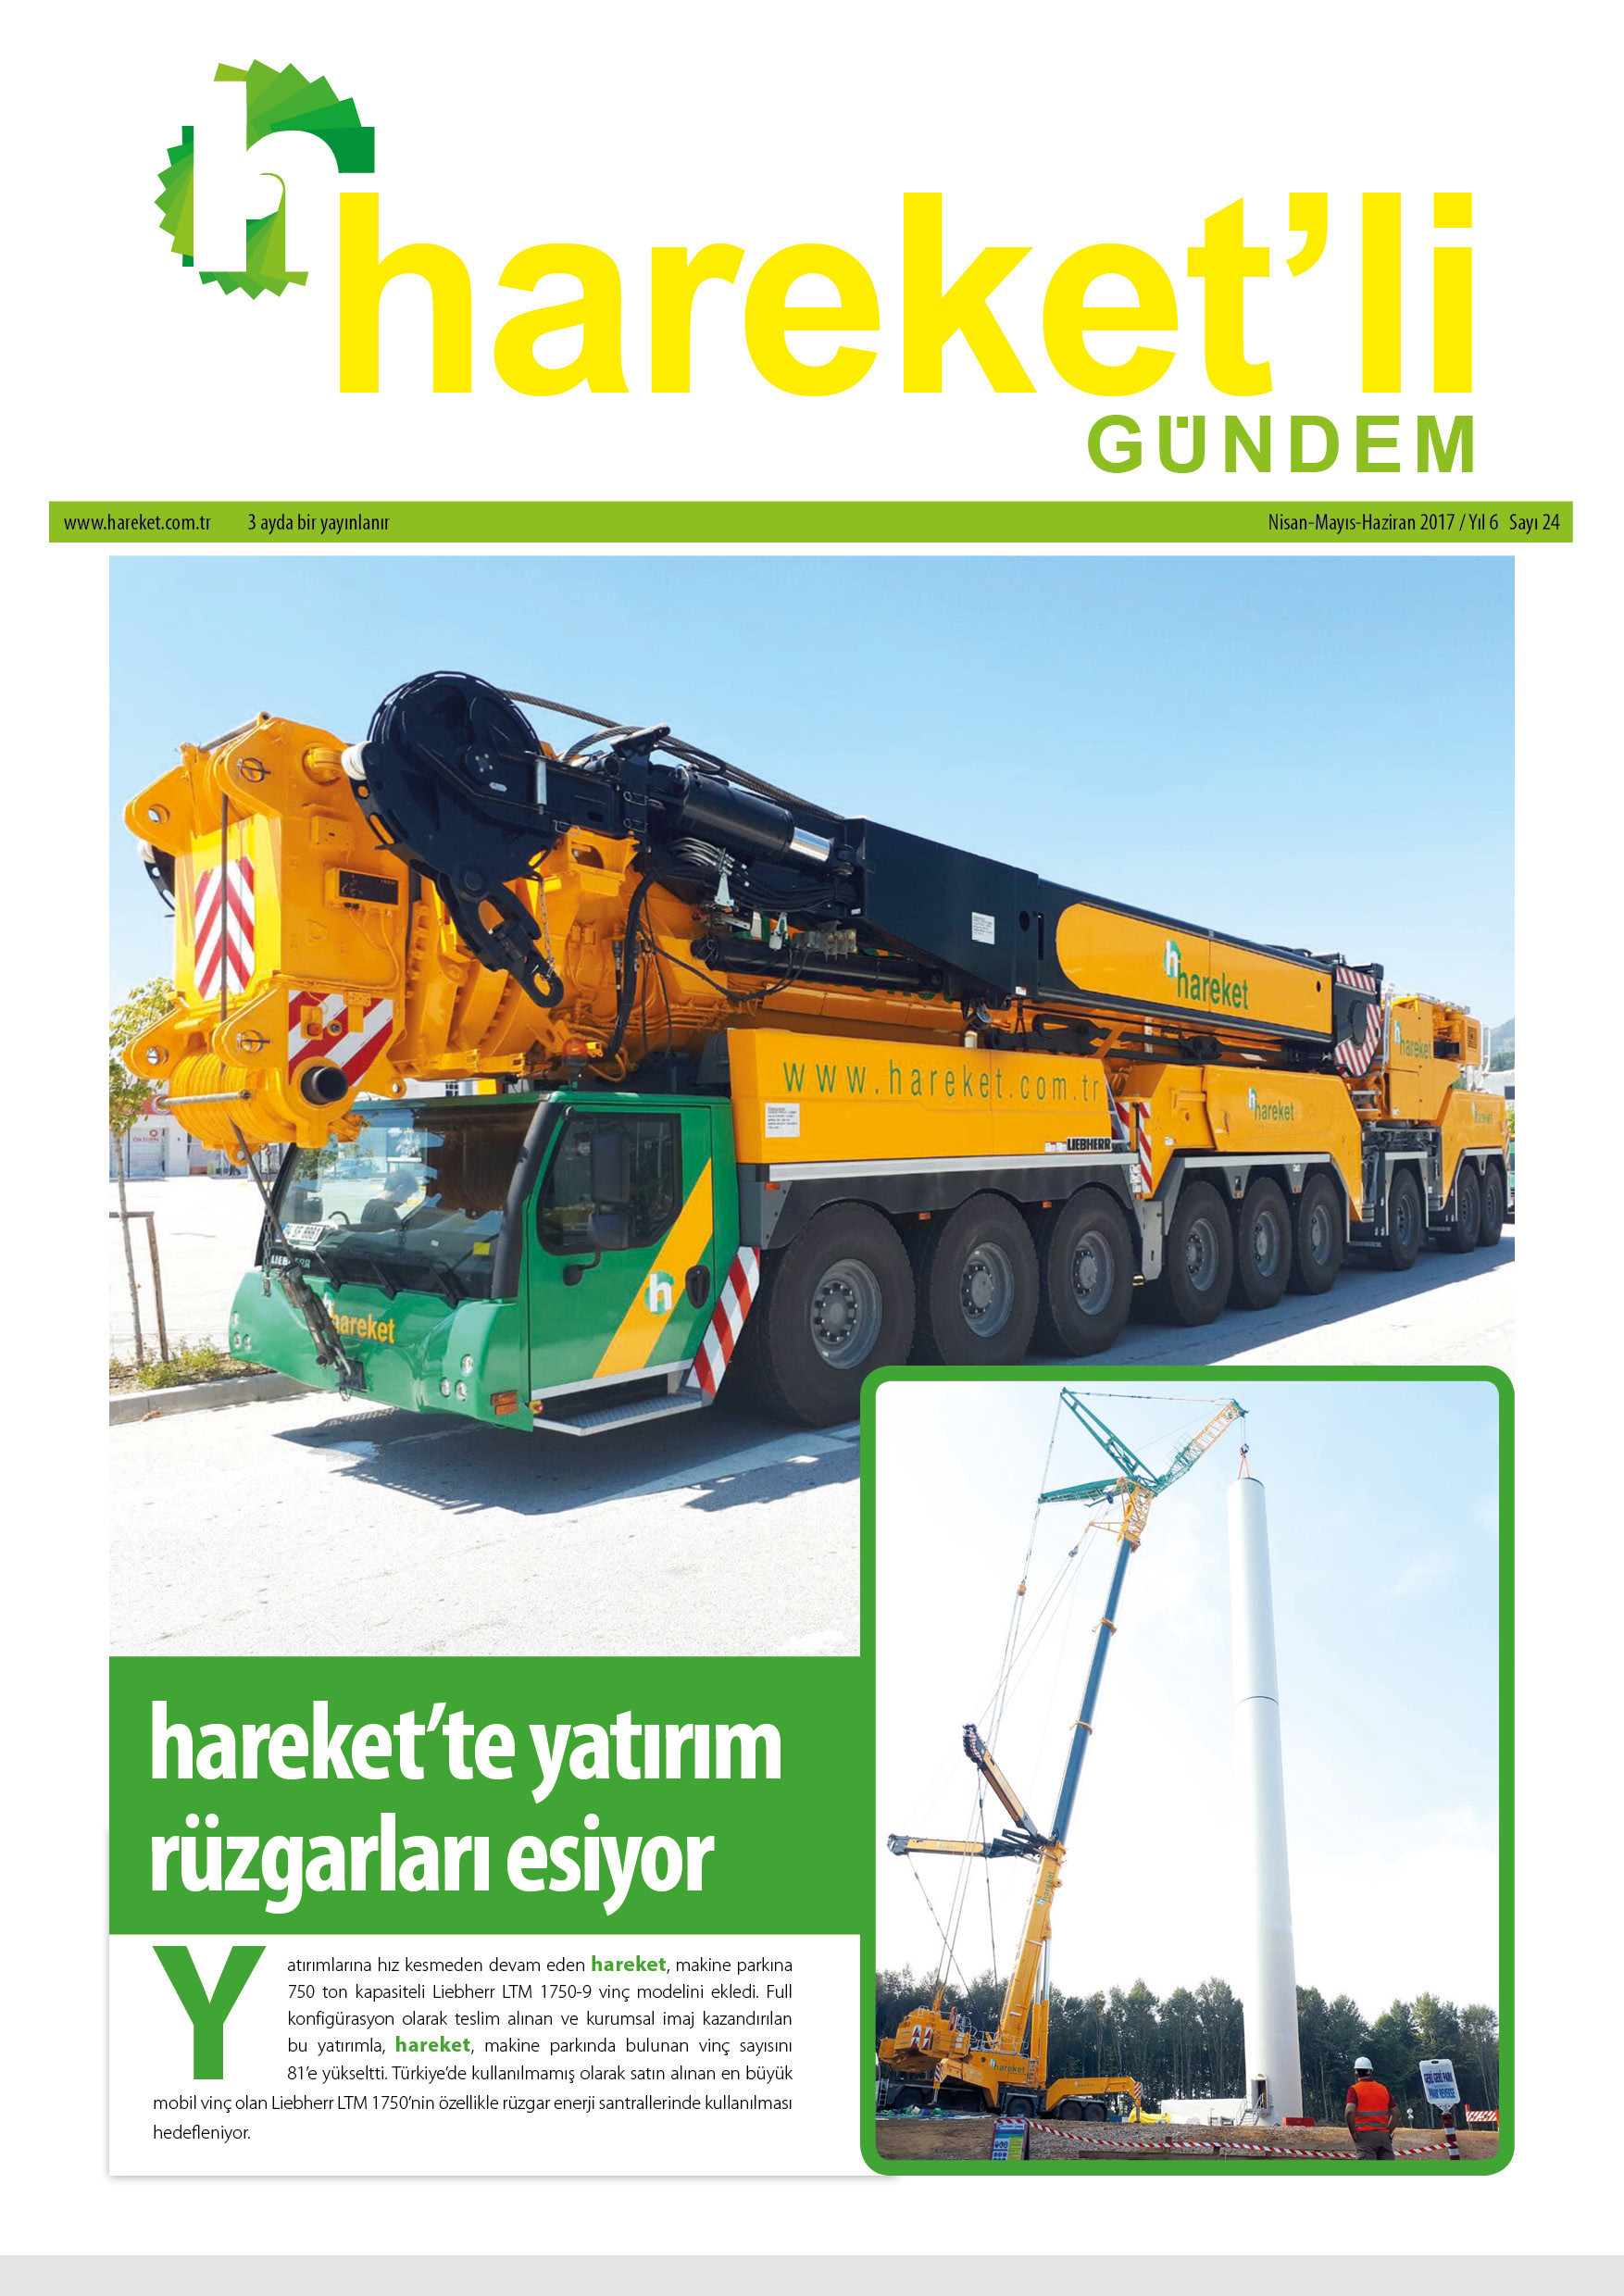 Hareket'li Gündem Magazine - ISSUE 24